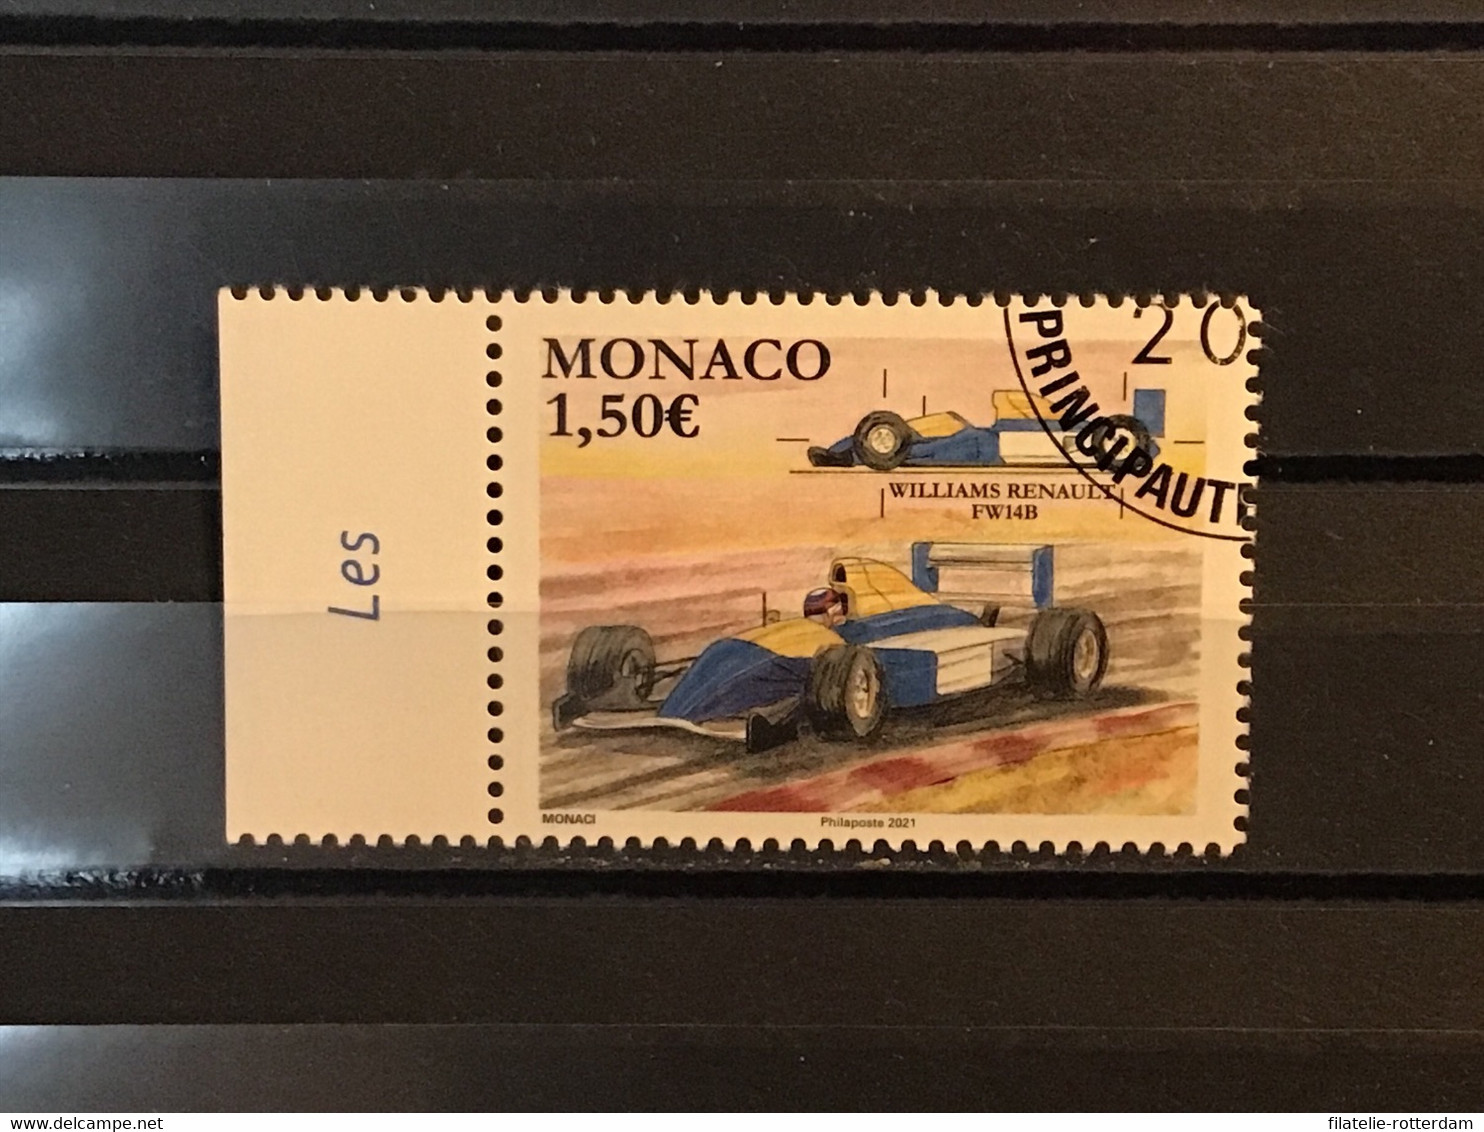 Monaco - Formule 1, Grand Prix Monaco (1.50) 2021 - Oblitérés